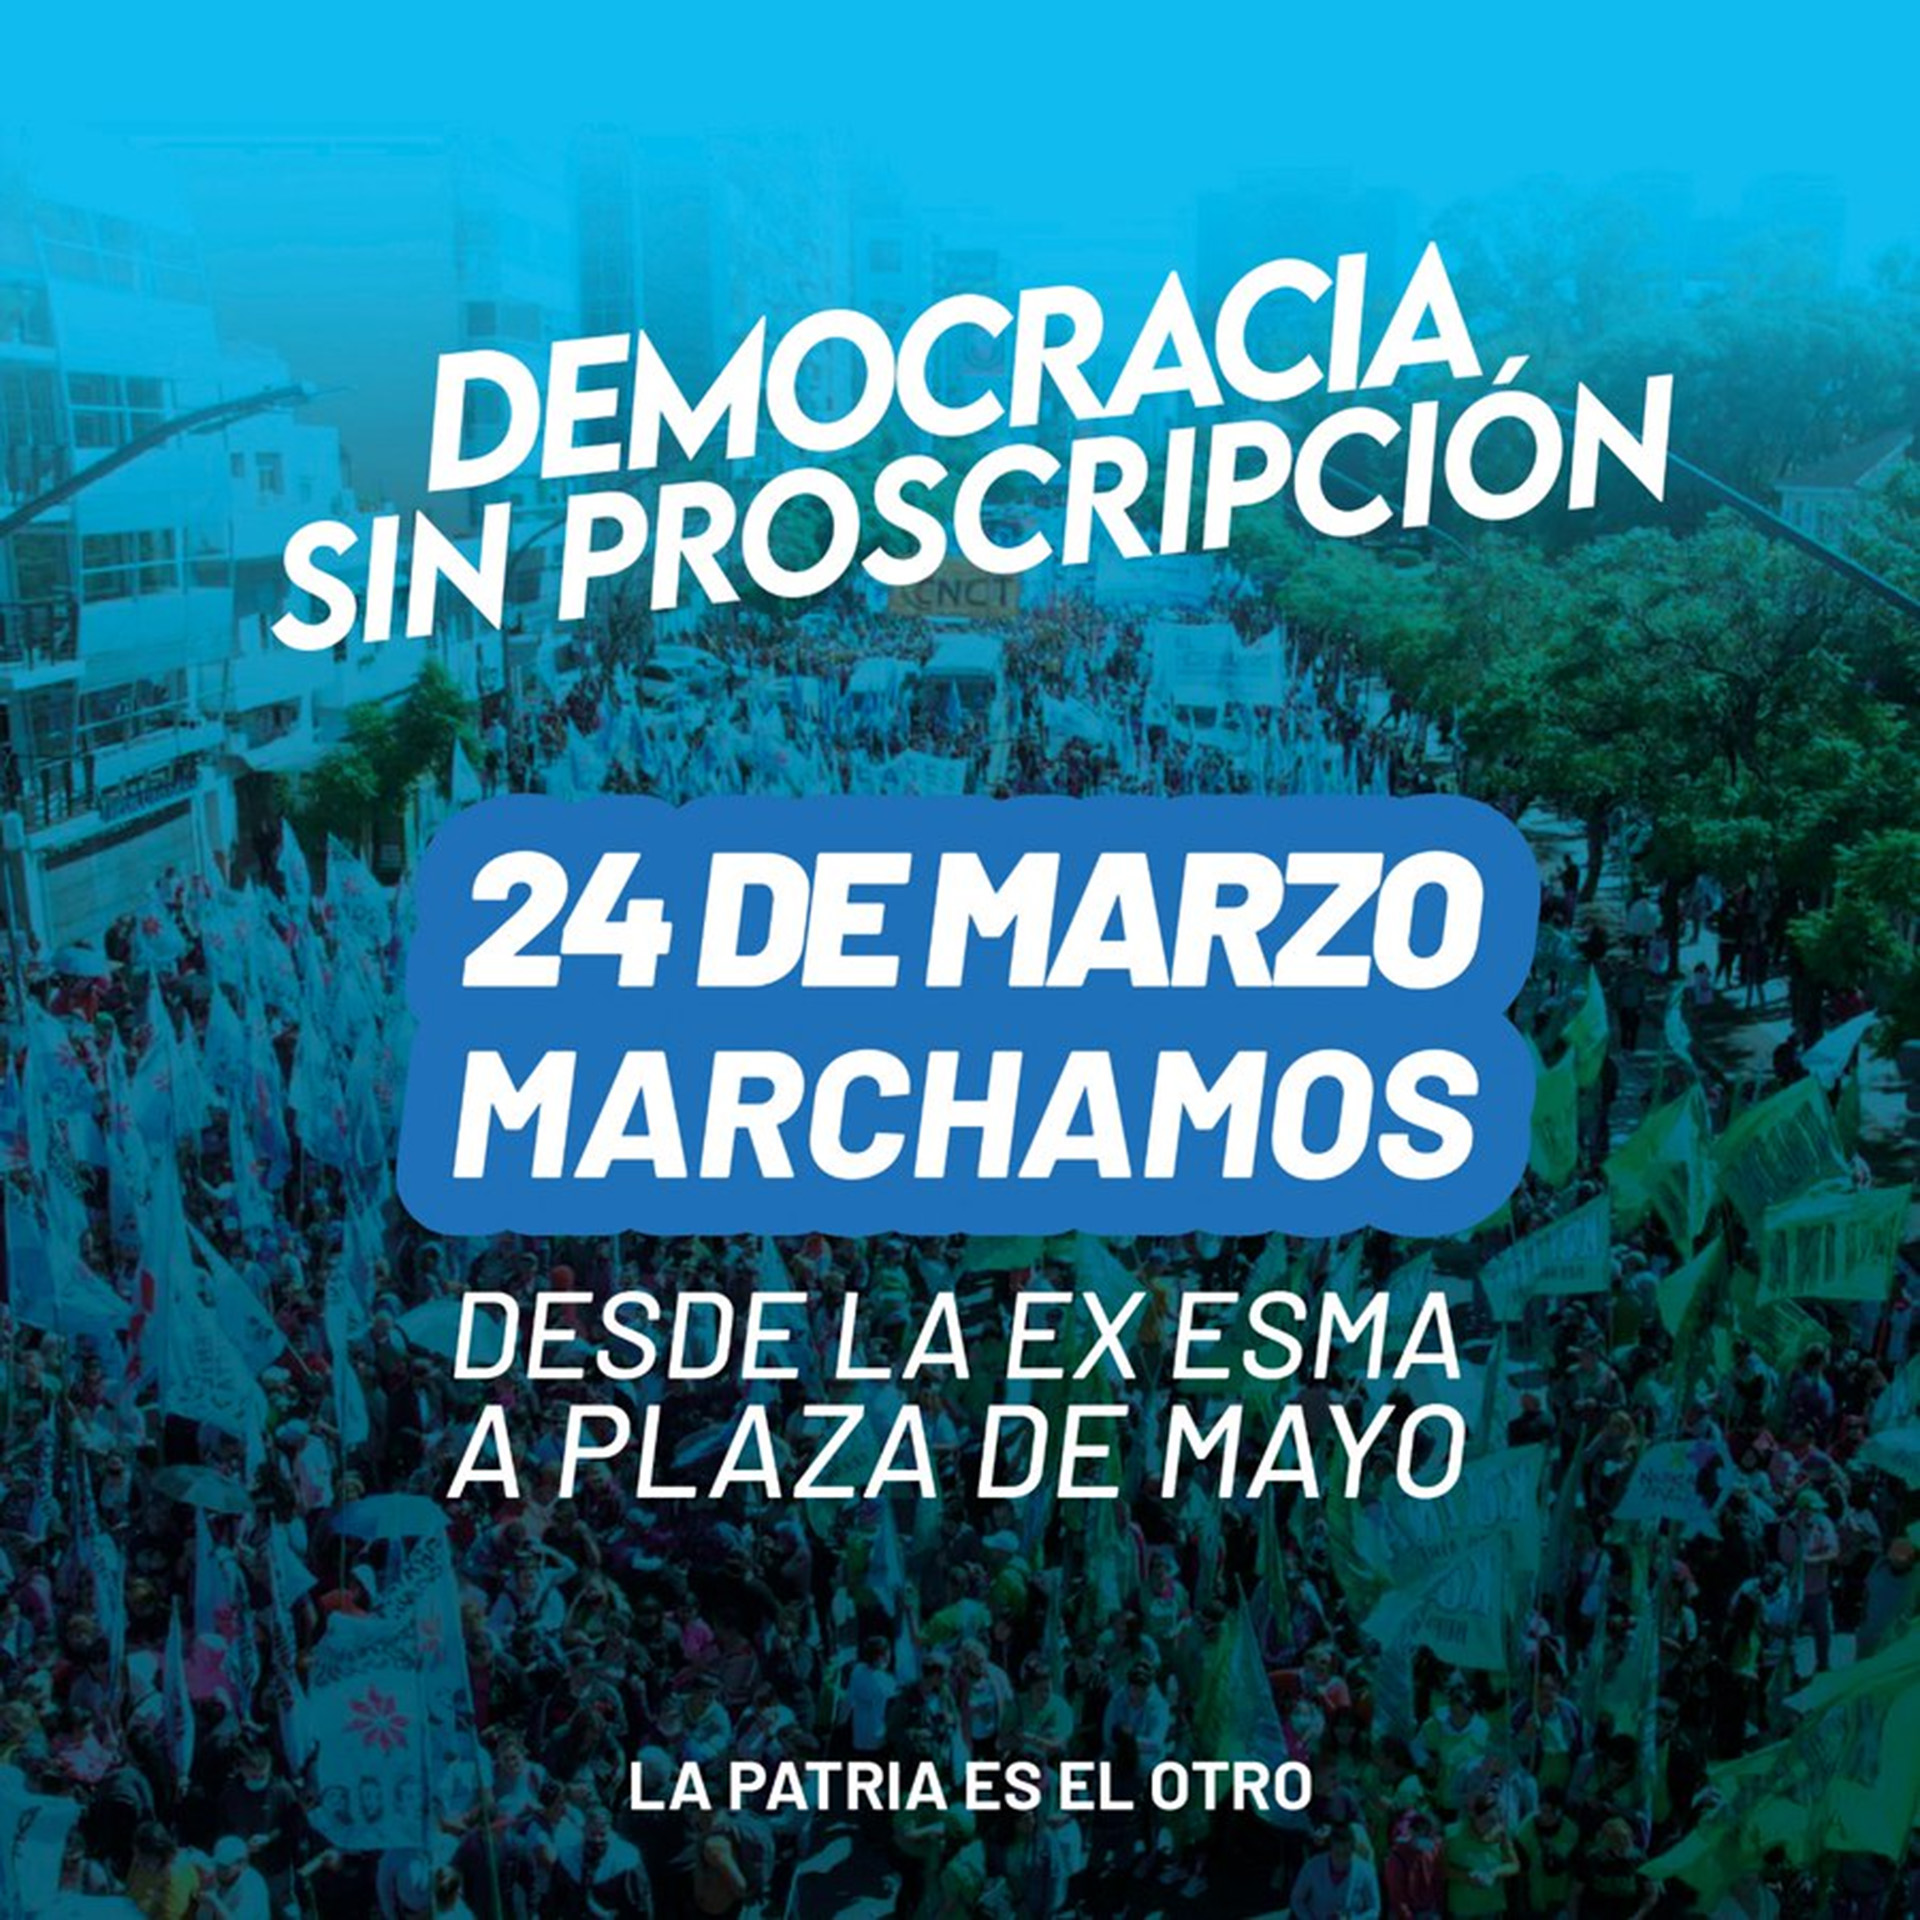 La consigna de la agrupación política de Andrés "Cuervo" Larroque para la marcha por el Día de la Memoria